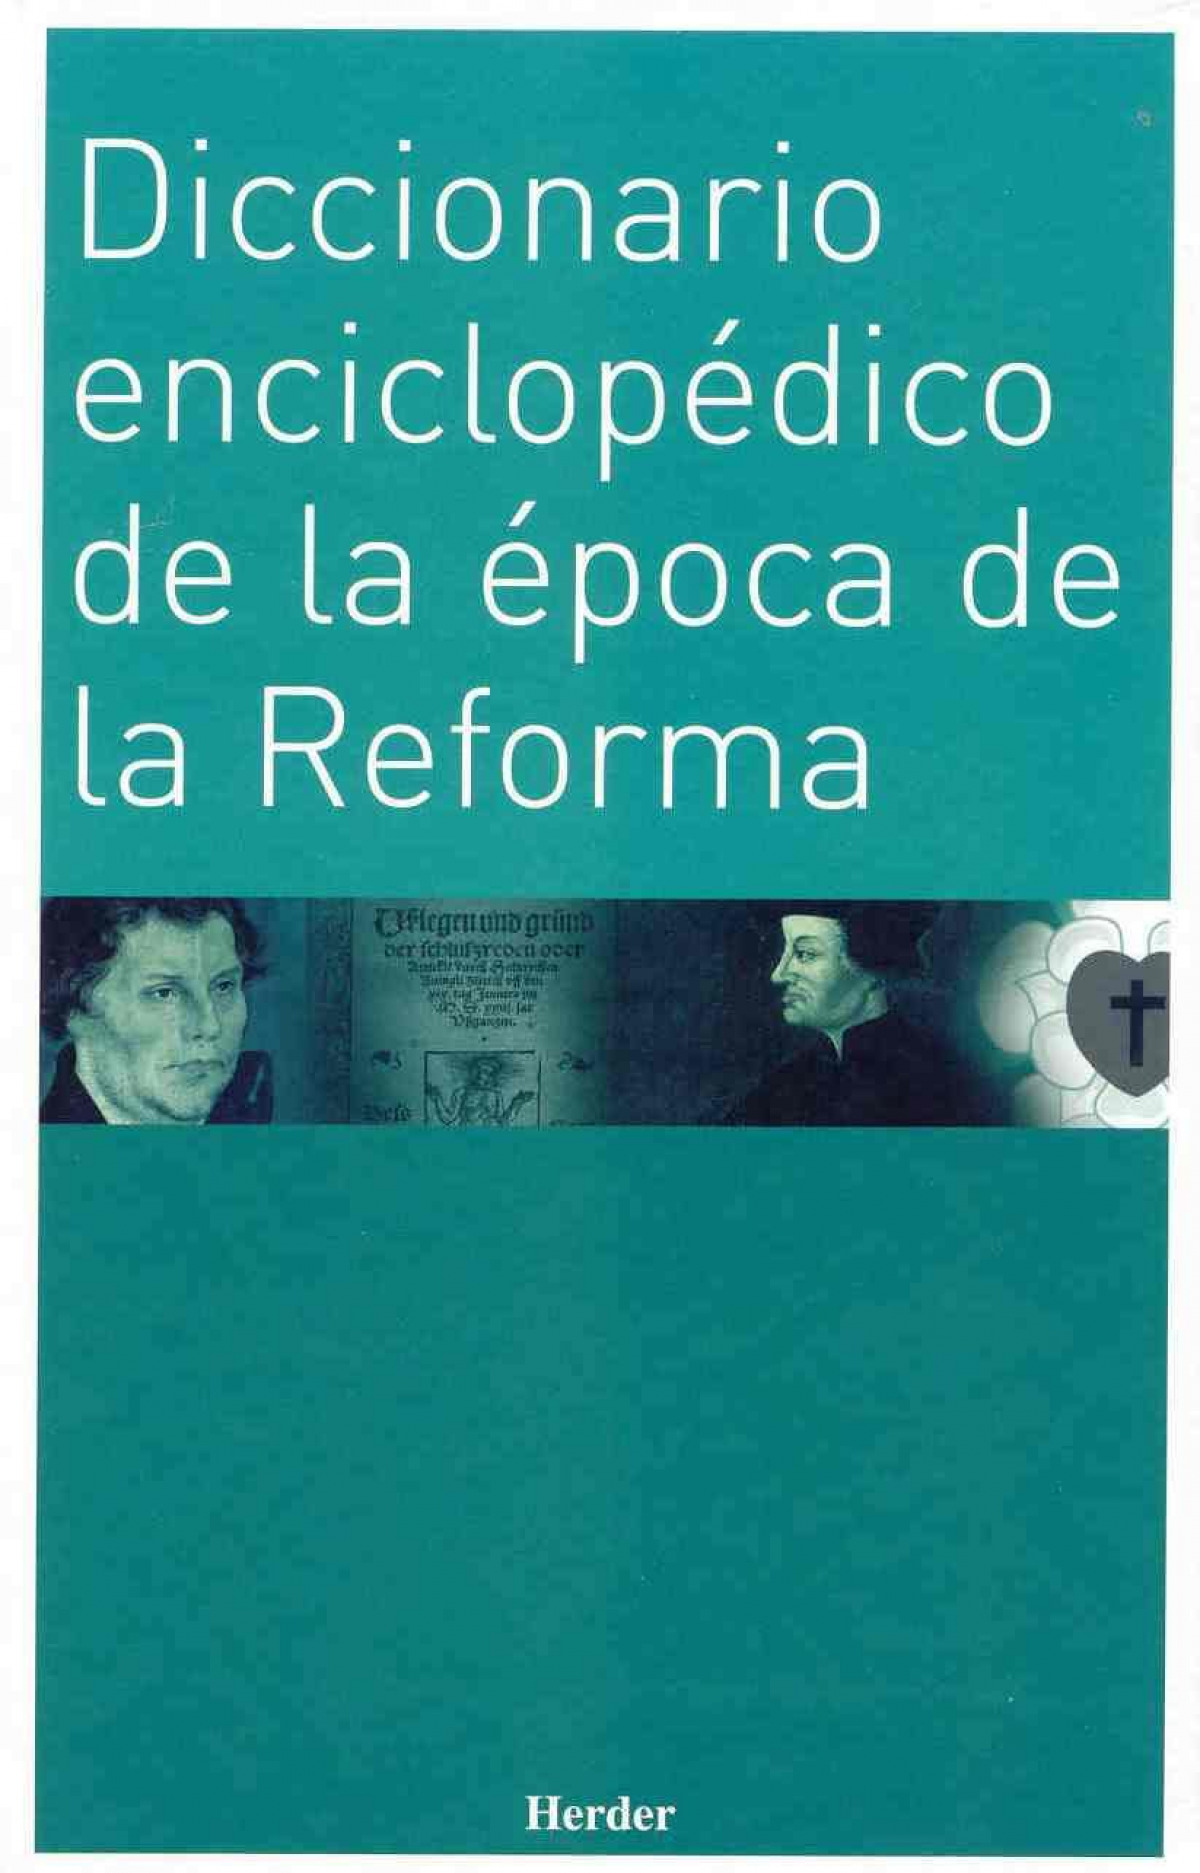 Diccionario enciclopédico de la época de la Reforma - Kasper, Walter